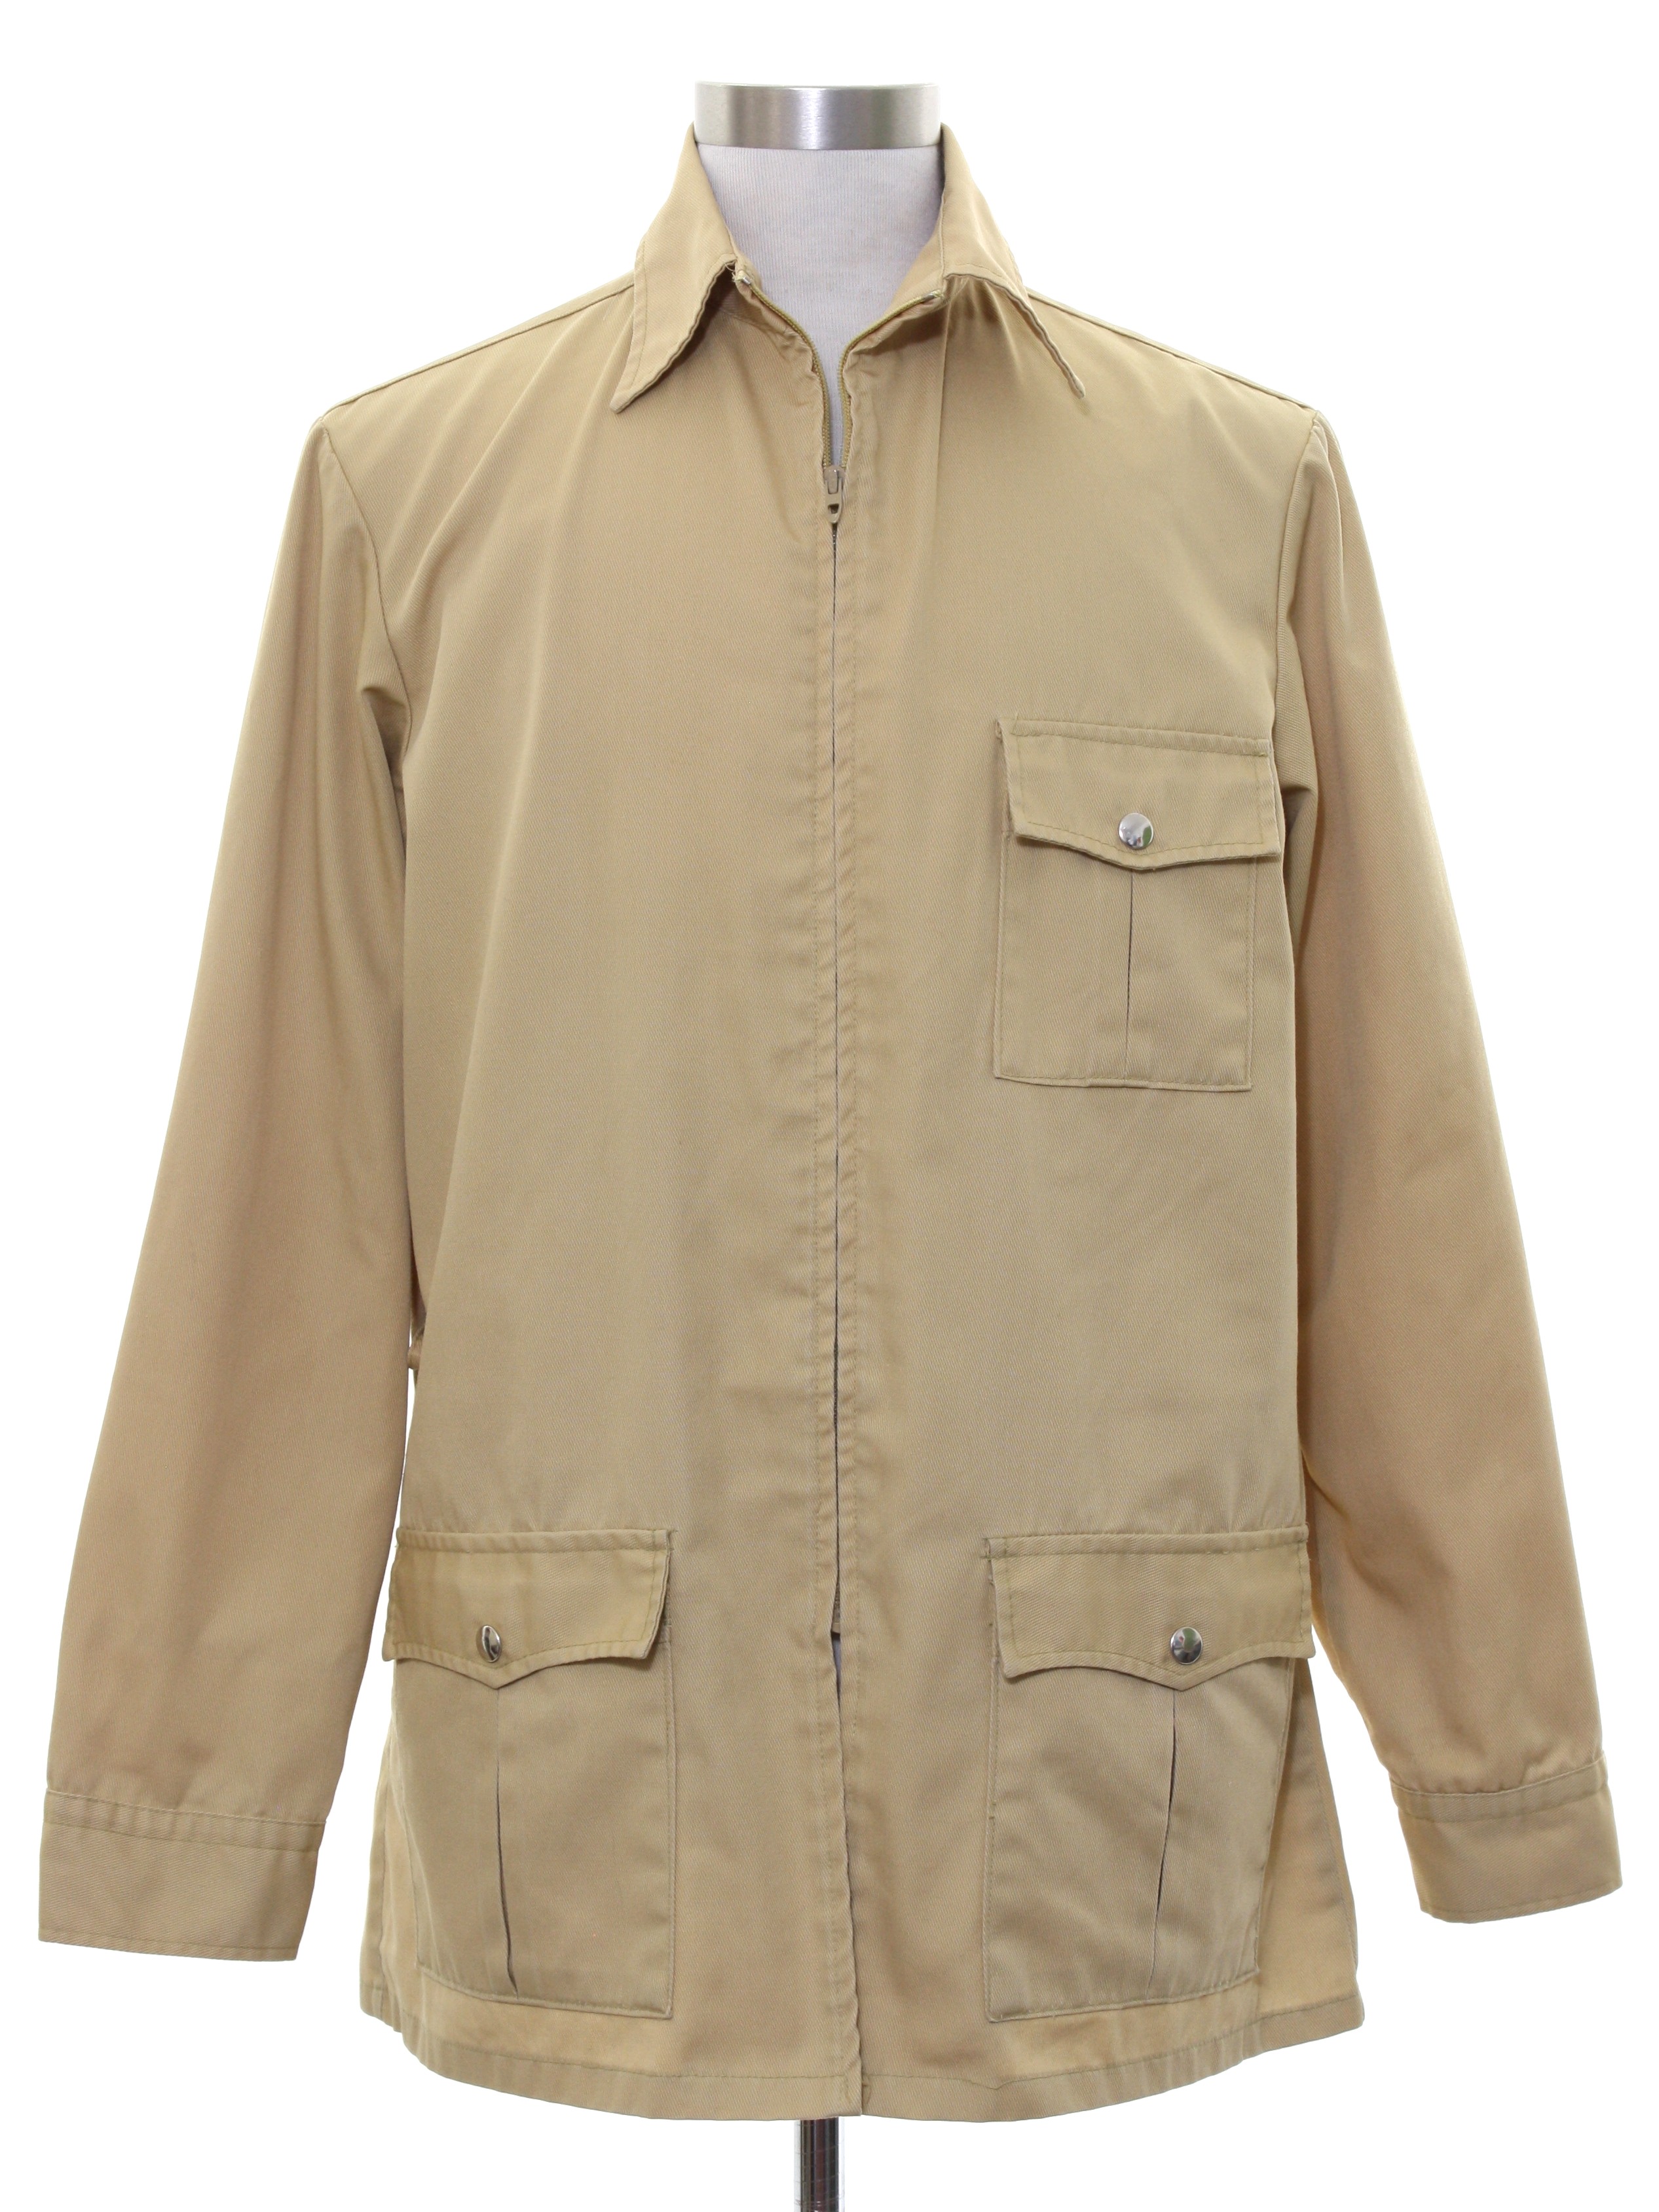 Retro 70s Jacket (Hathaway Sporstwear) : 70s -Hathaway Sporstwear- Mens ...